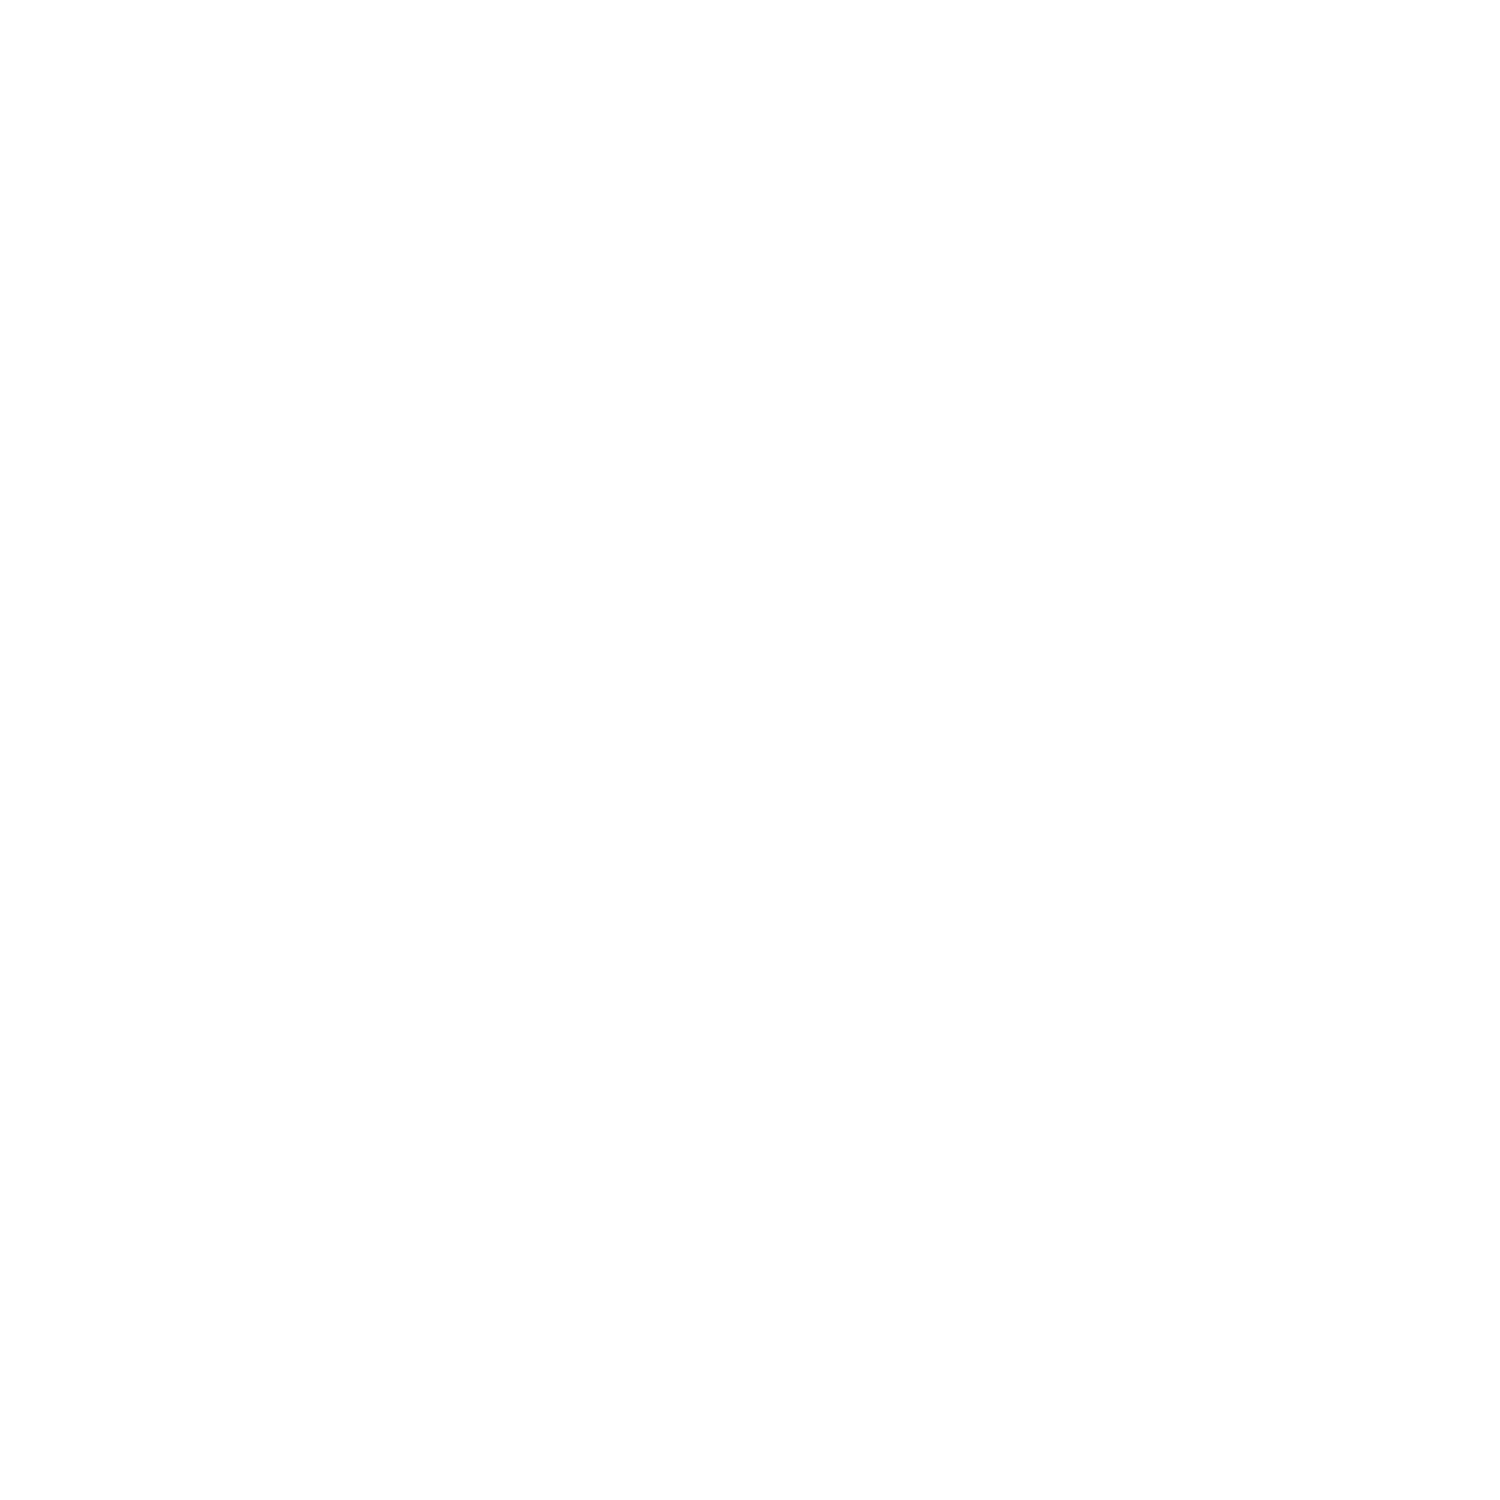 Beth Eden